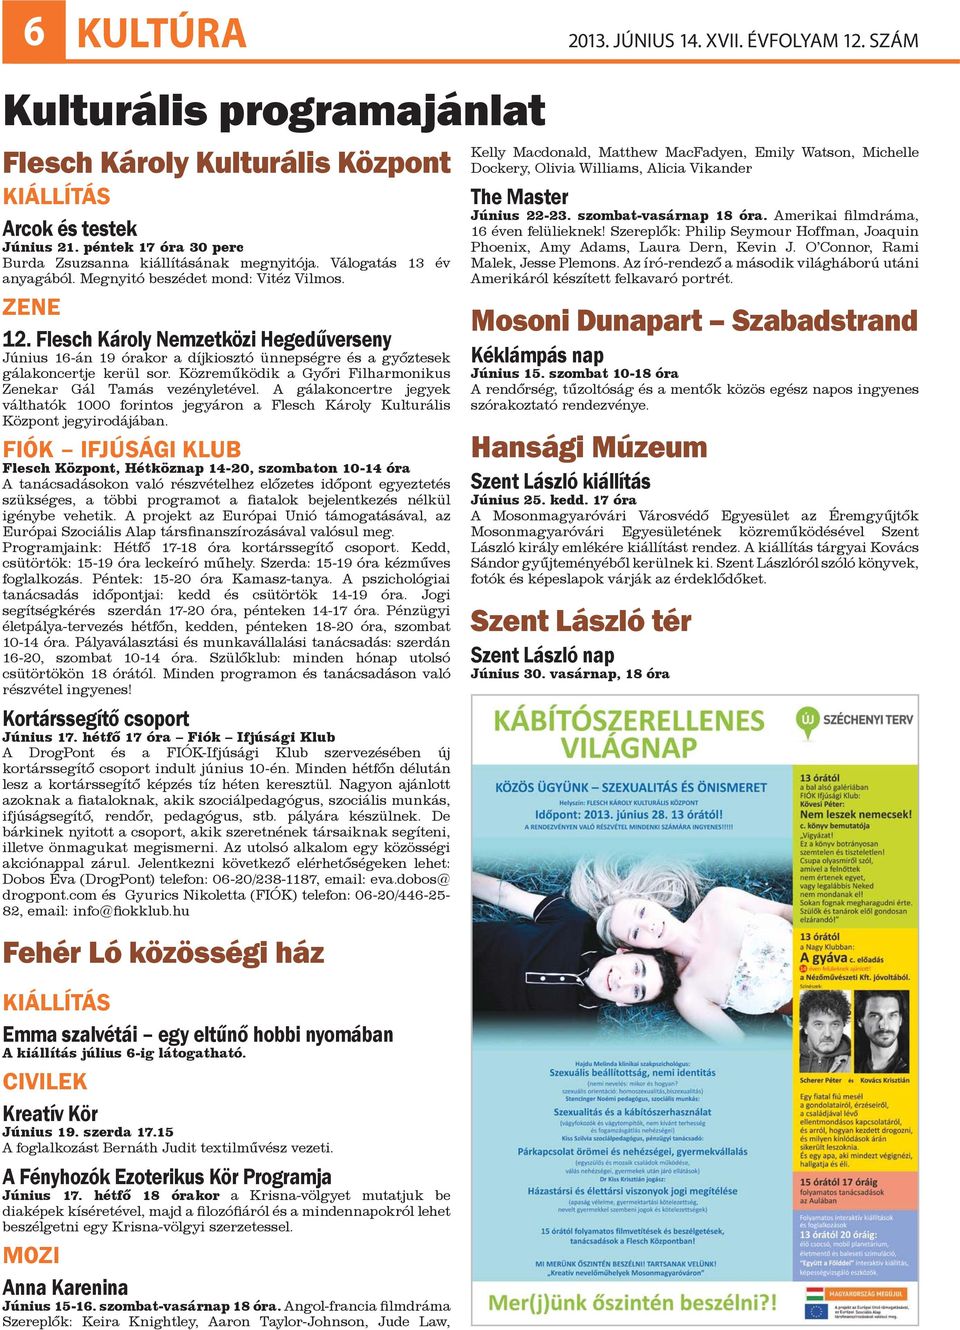 Flesch Károly Nemzetközi Hegedűverseny Június 16-án 19 órakor a díjkiosztó ünnepségre és a győztesek gálakoncertje kerül sor. Közreműködik a Győri Filharmonikus Zenekar Gál Tamás vezényletével.